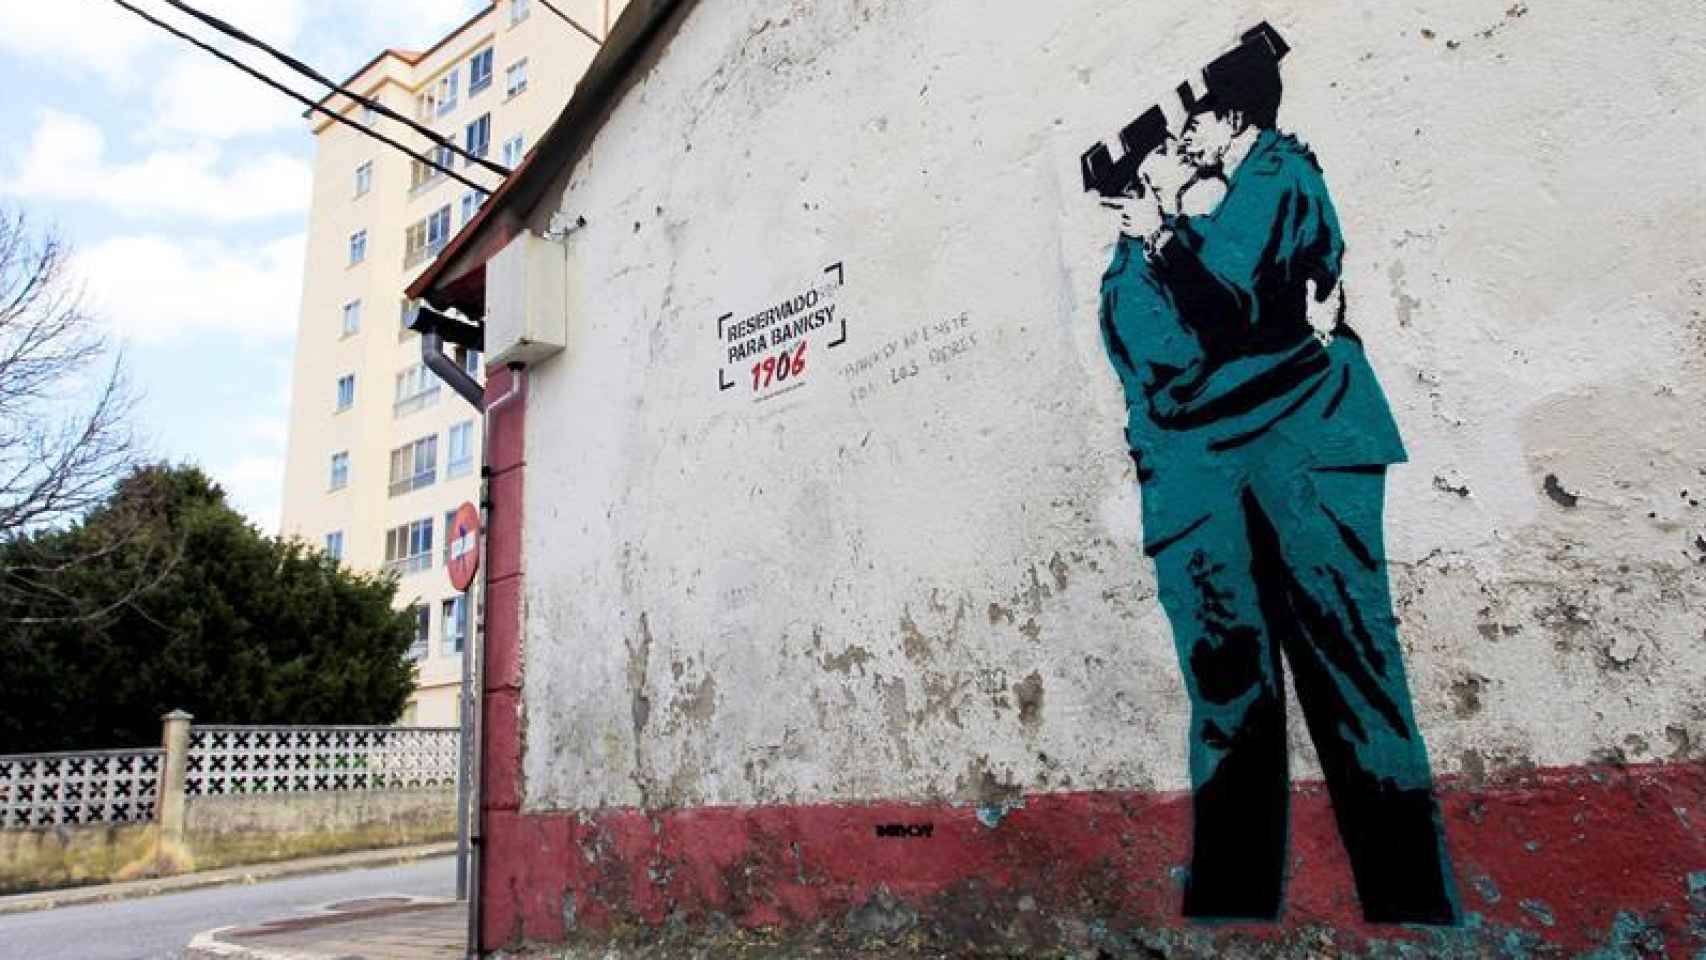 El grafiti ha sido pintado por Banksy, pero todavía no se ha podido confirmar la autoría de la obra.